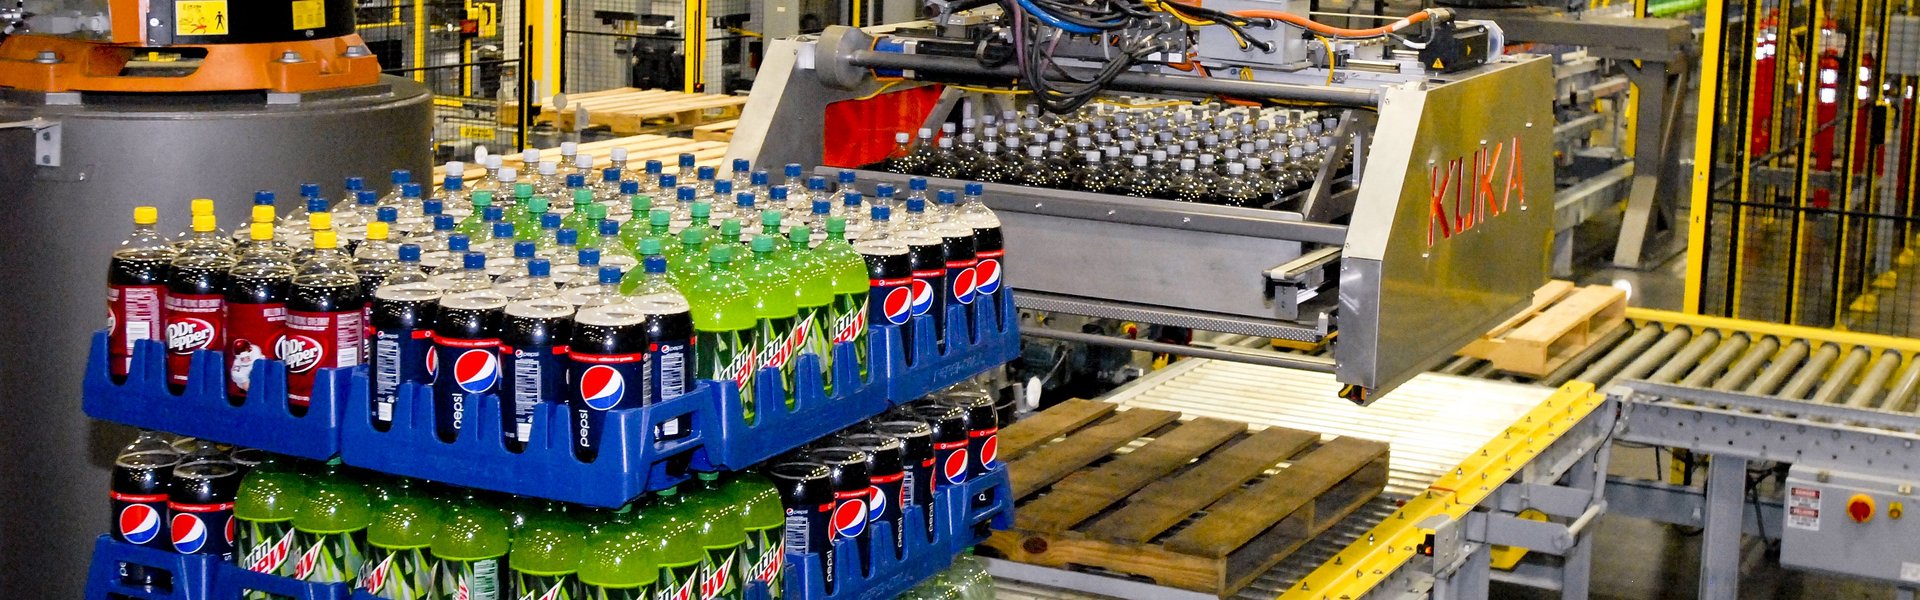 Pickingroboter für Getränkeschichten, automatisches Lagersystem der Pepsi Bottling Group, USA